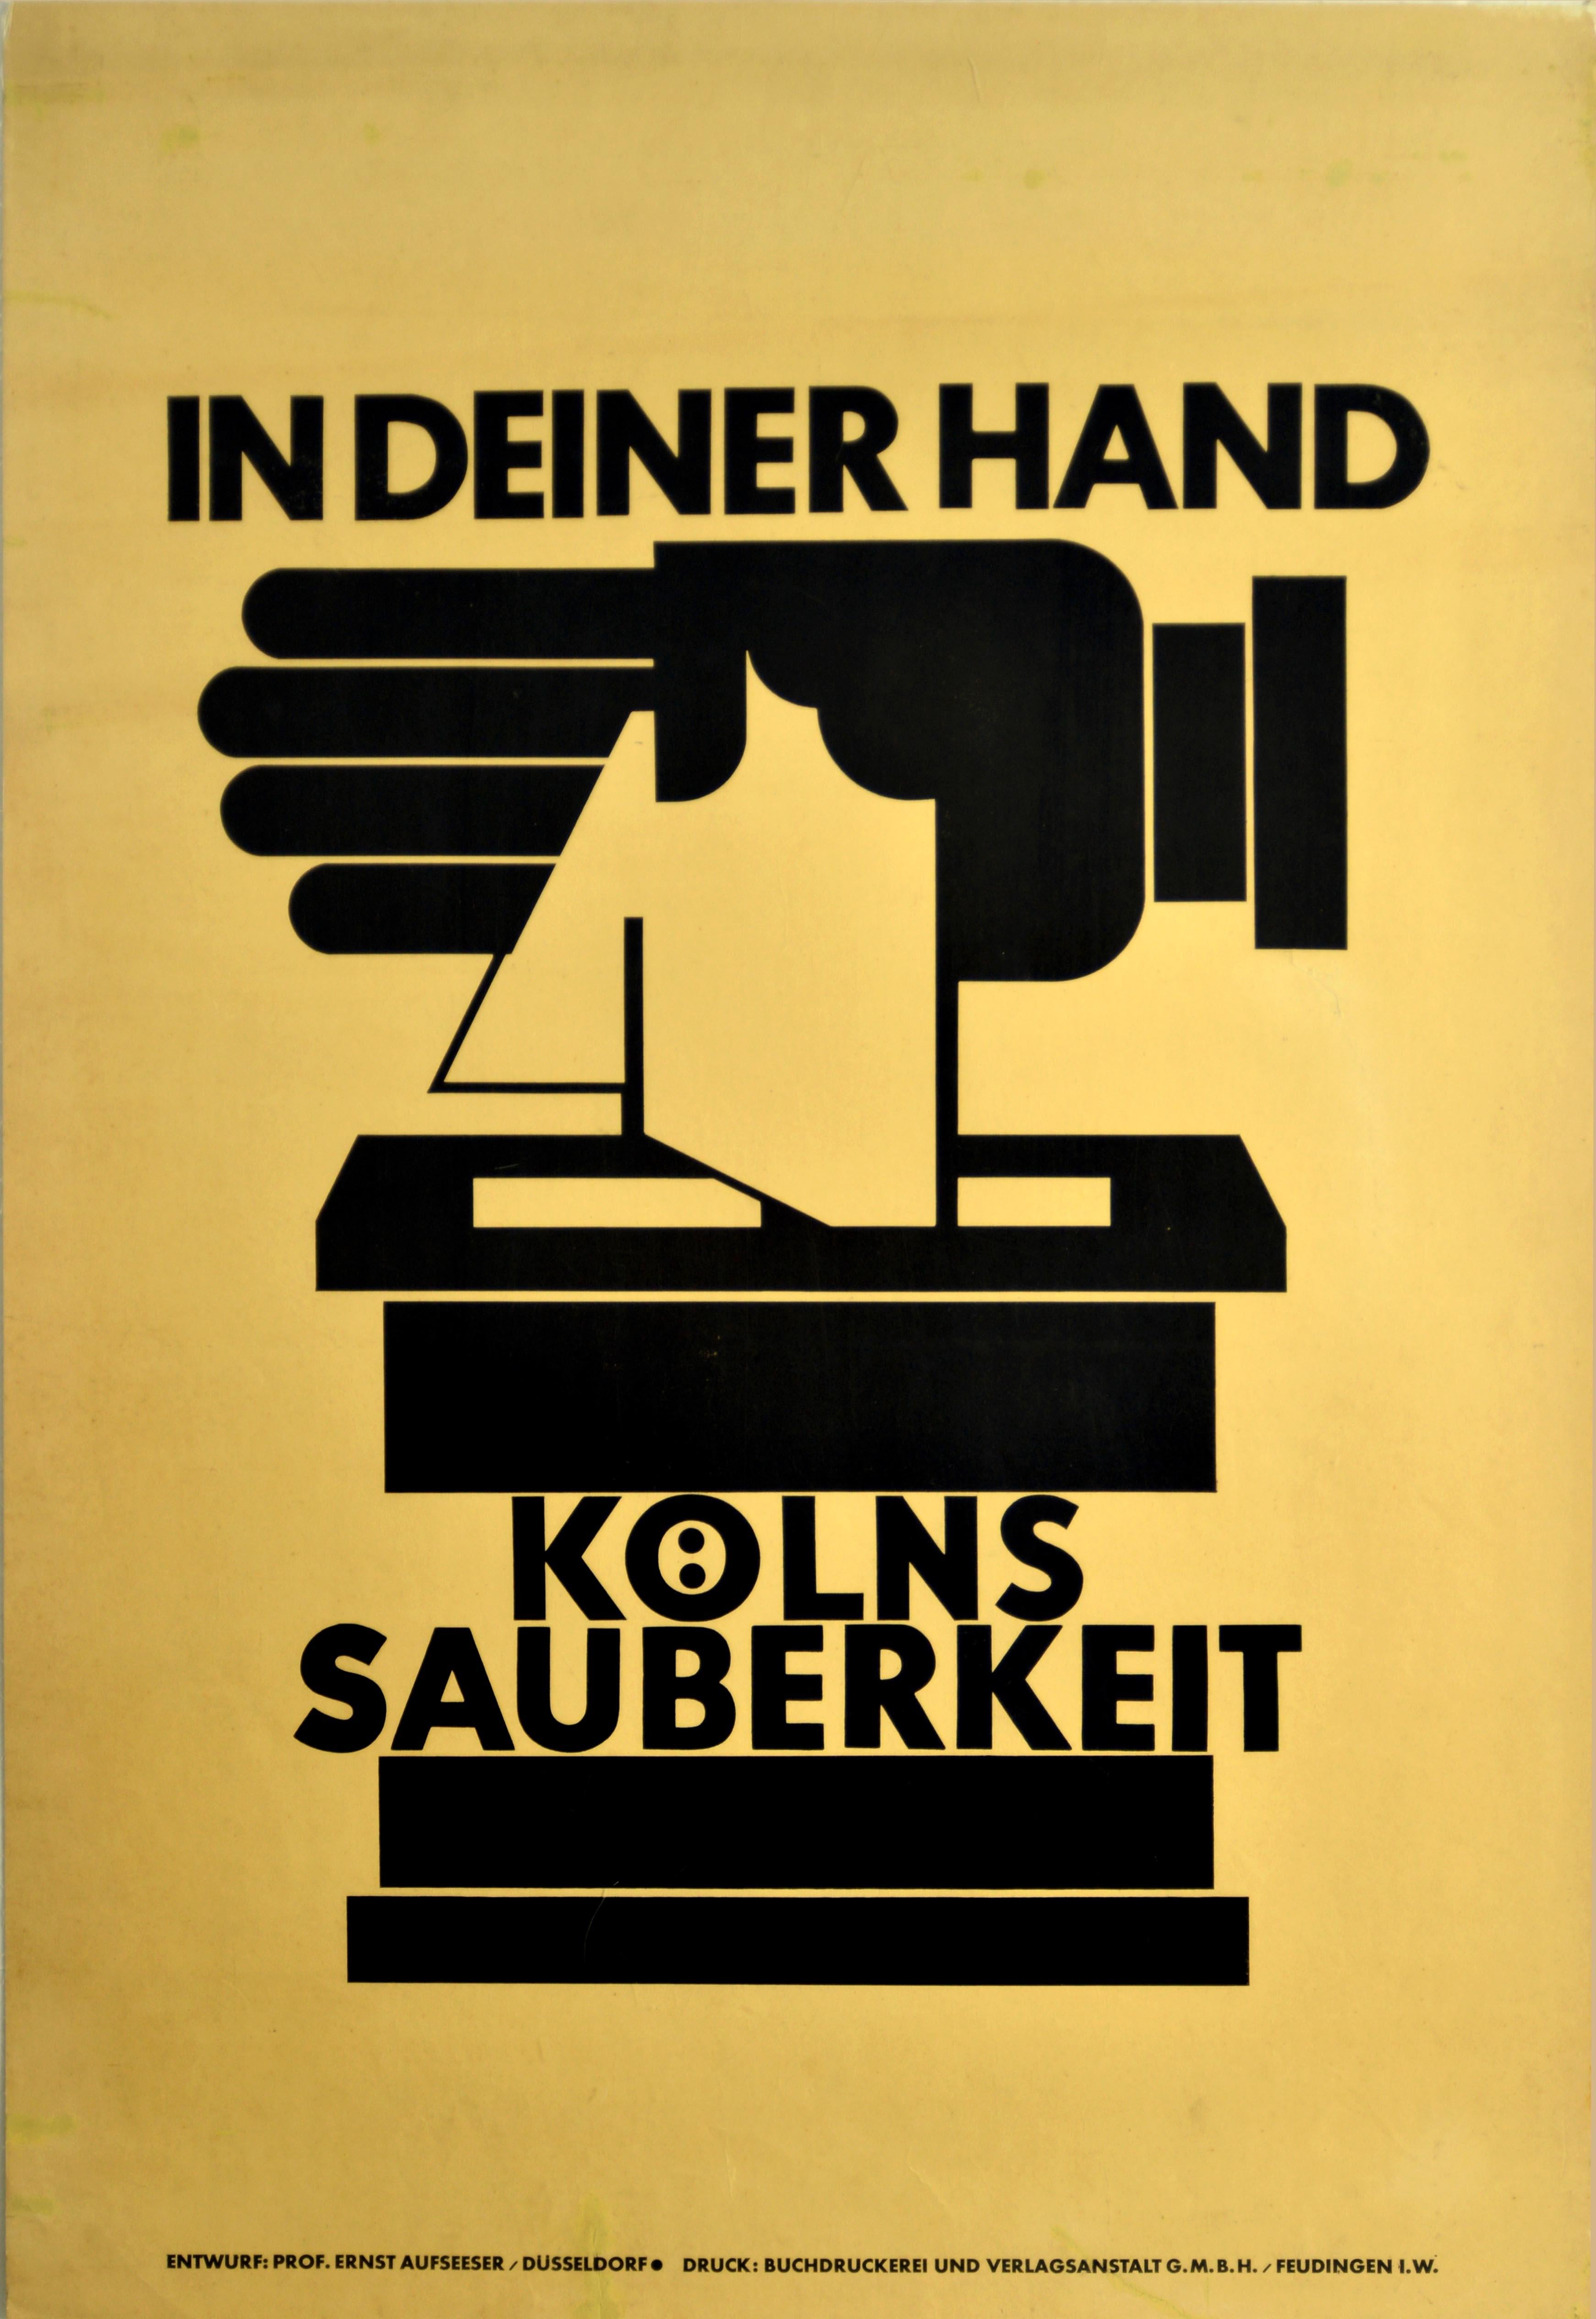 Affiche rétro originale, Cleanliness In Your Hand, Hygiène, Dessin graphique du Bauhaus